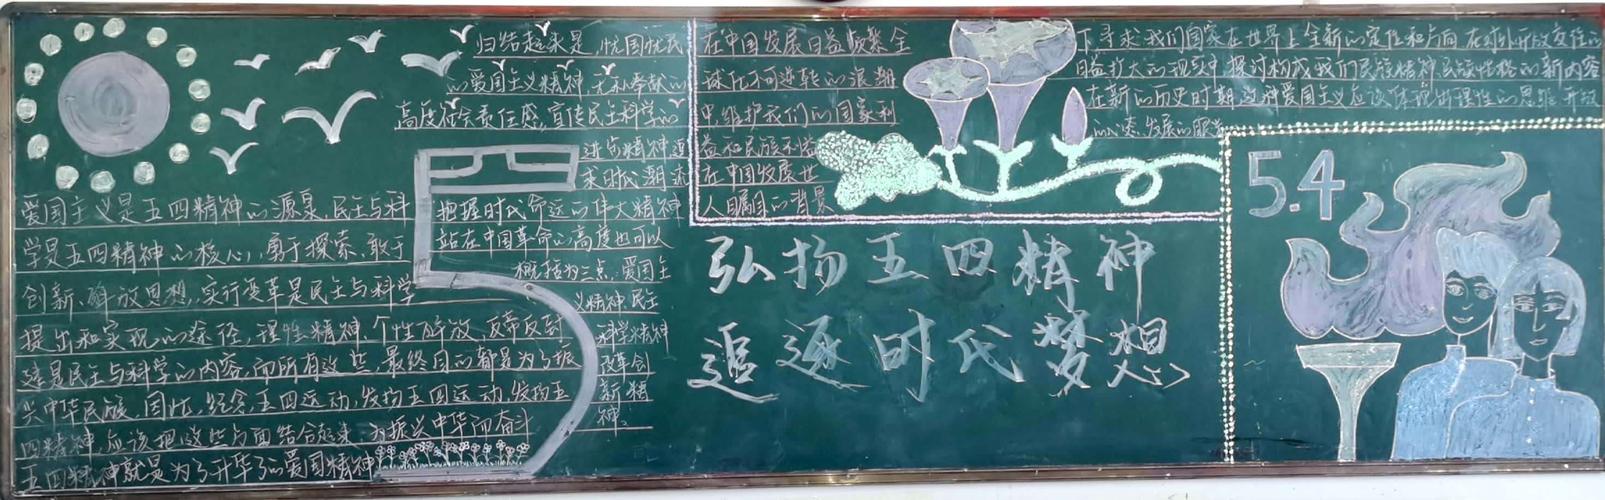 主题黑板报作品展 写美篇高二三班作品 从五四运动到新时代 中国青年